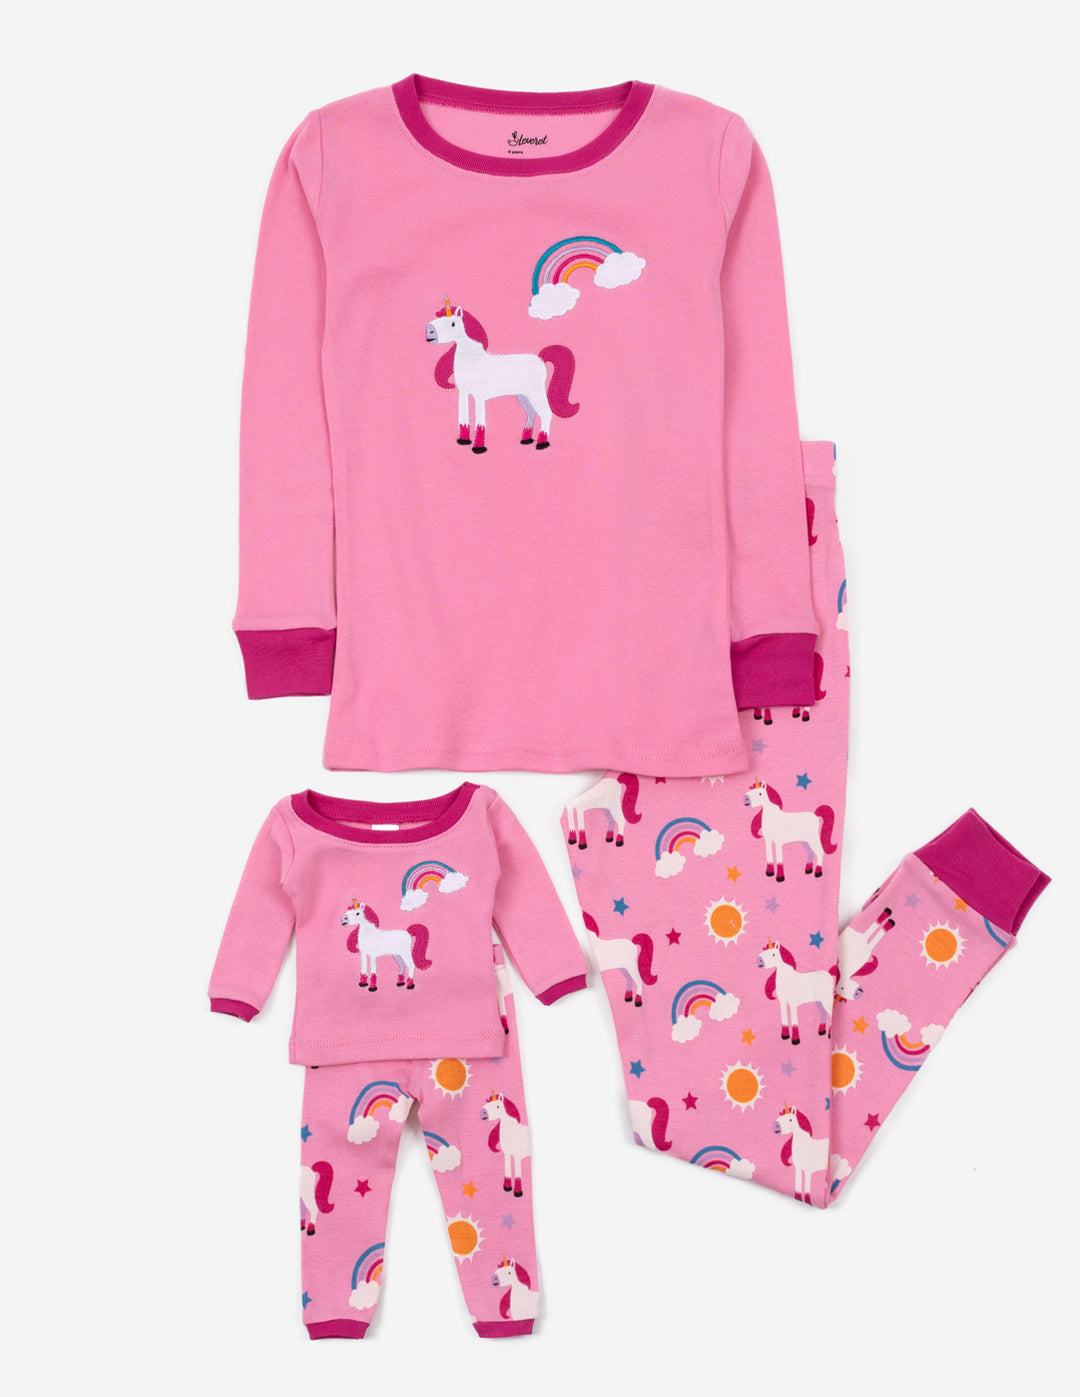 Kids Girls Unicorn Printed Sleepwear Set Tops+pants Pajamas Set